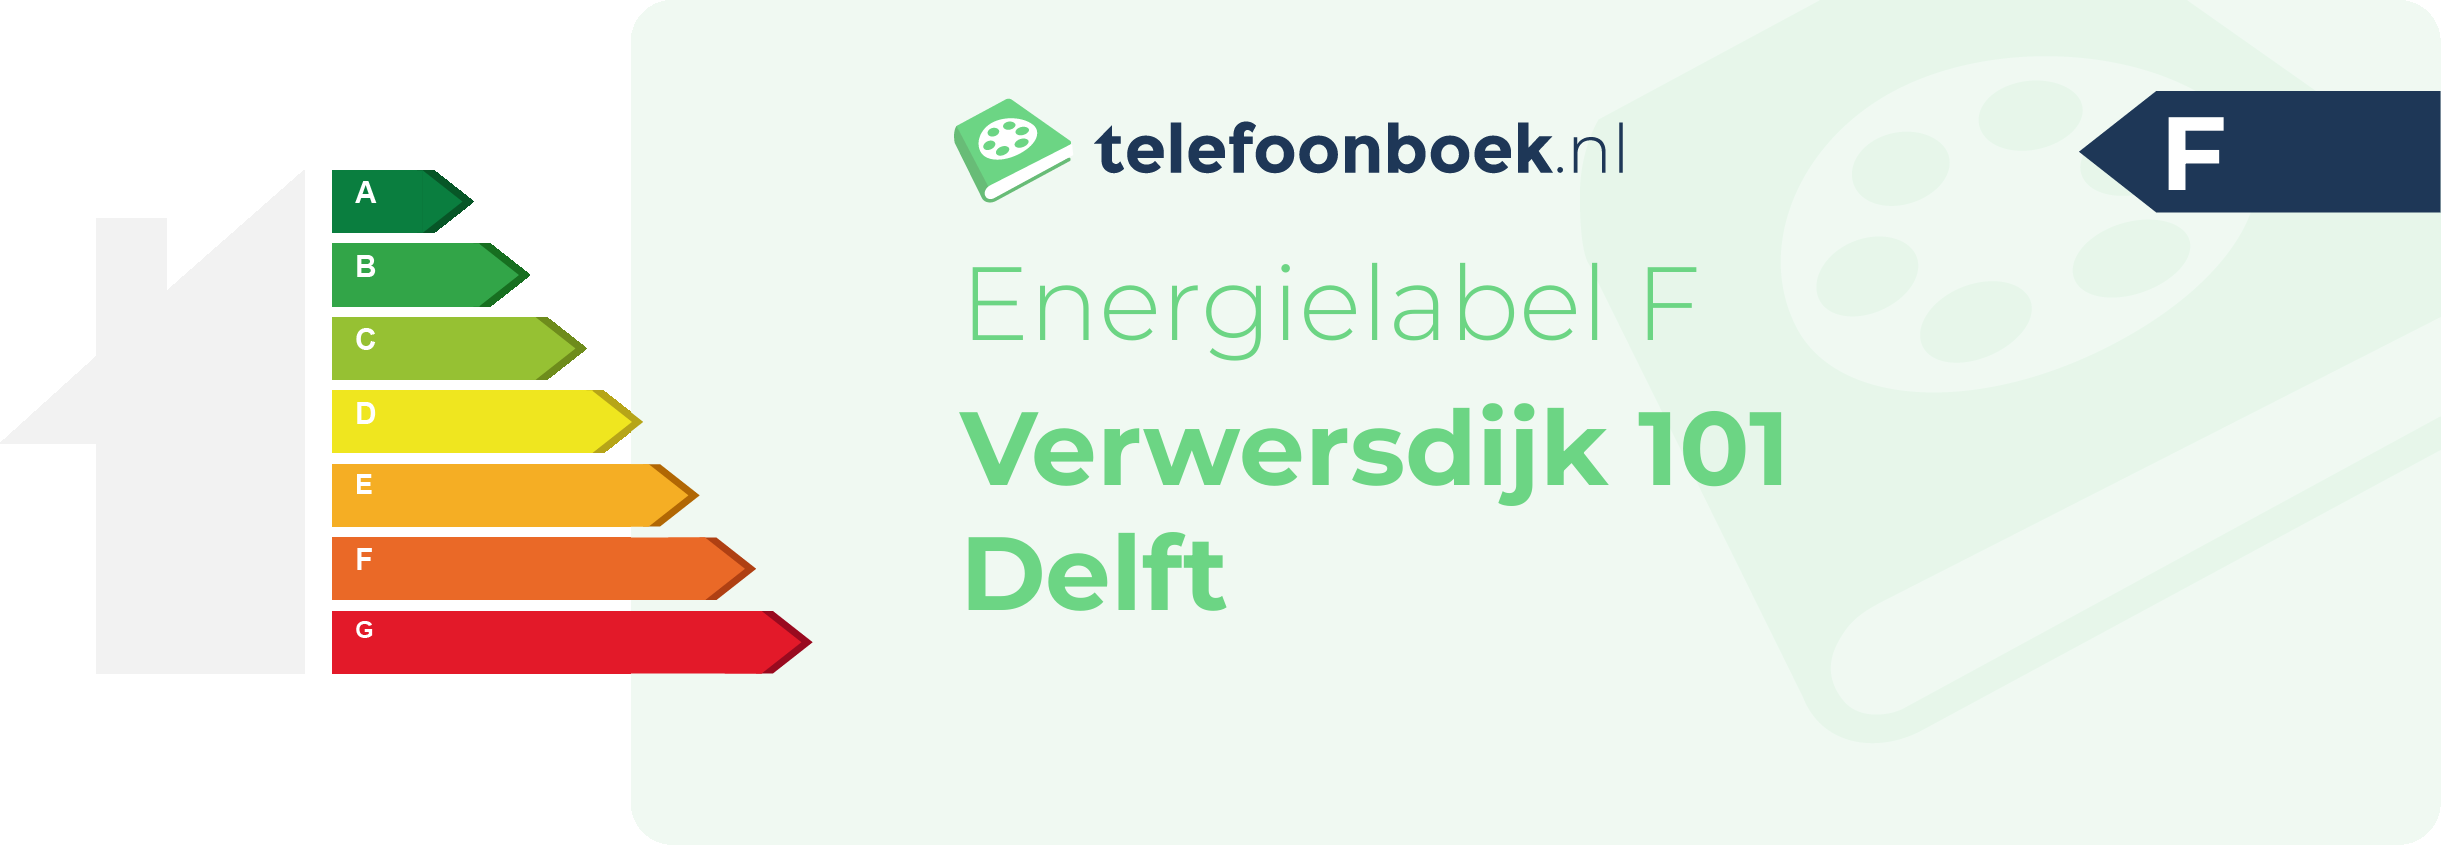 Energielabel Verwersdijk 101 Delft